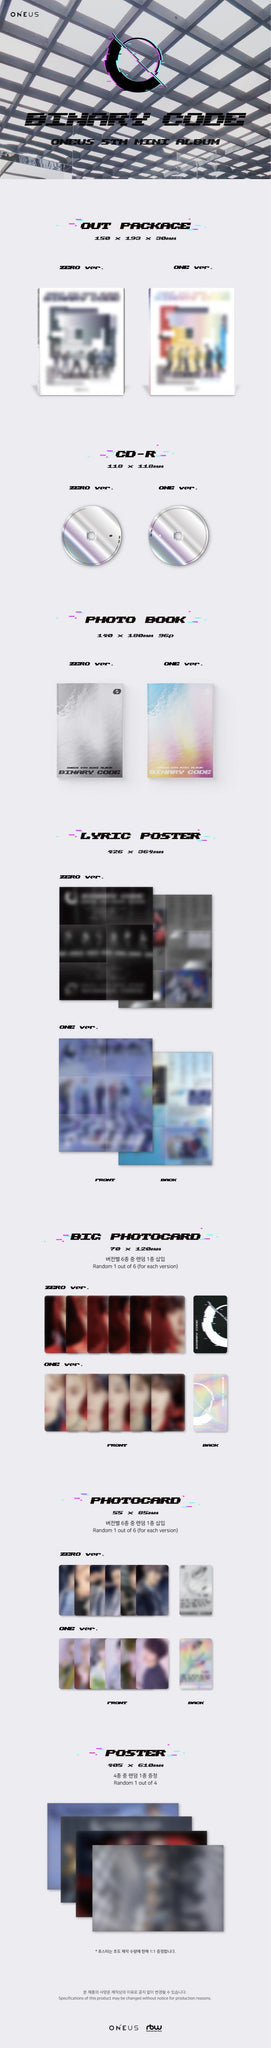 Korea Pop Store ONEUS - BINARY CODE (5TH MINI ALBUM) Kawaii Gifts